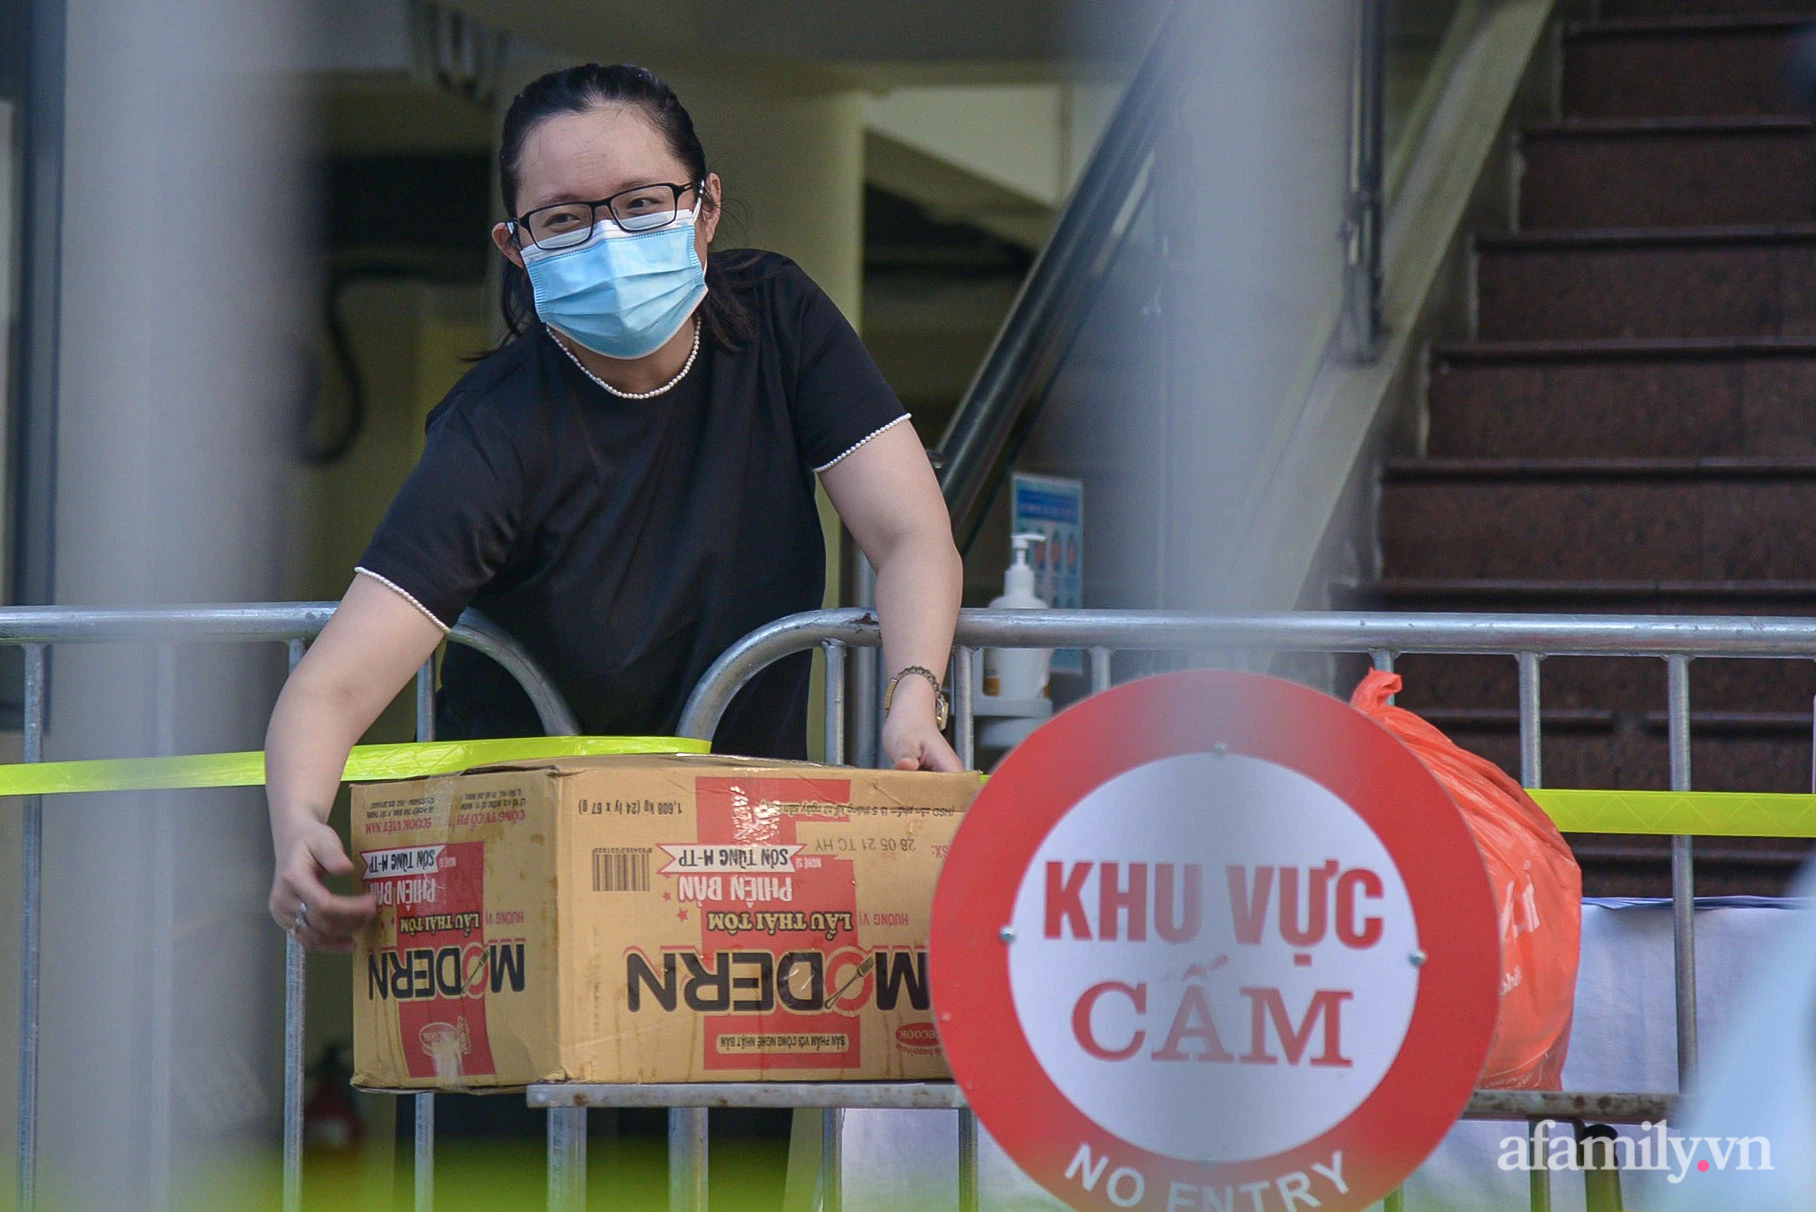 Hà Nội: Phong tỏa tạm thời tại tòa chung cư Sunshine Palace gần 1000 dân và tòa nhà Vietinbank ở 25 Lý Thường Kiệt liên quan đến ca dương tính SARS-CoV-2 - Ảnh 6.